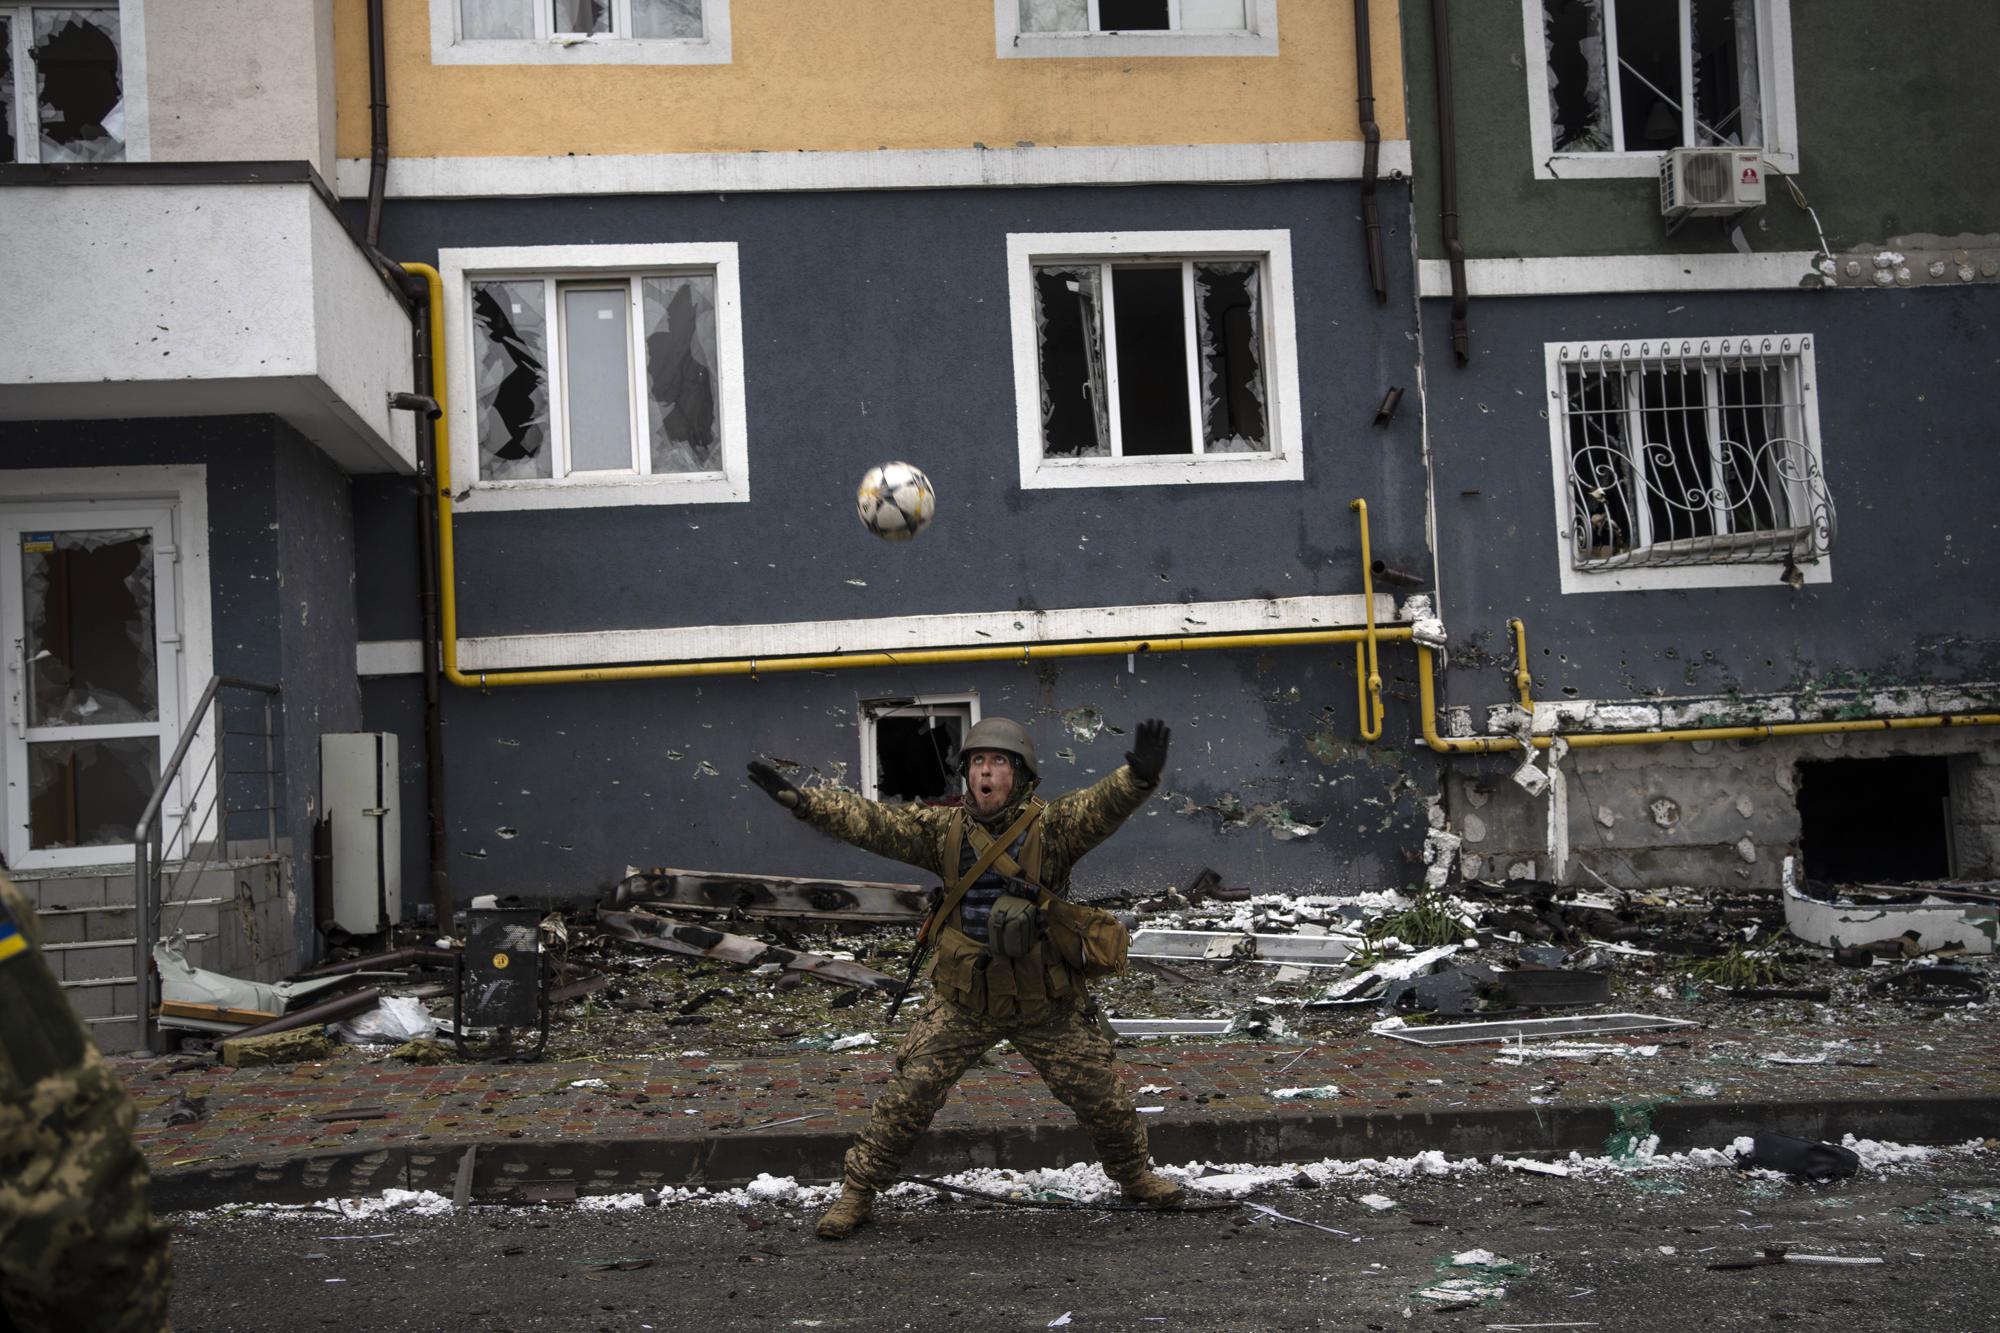 100 ngày chiến sự ở Ukraine: Lặng người trước những bức ảnh vừa đau thương vừa kiên cường - Ảnh 14.